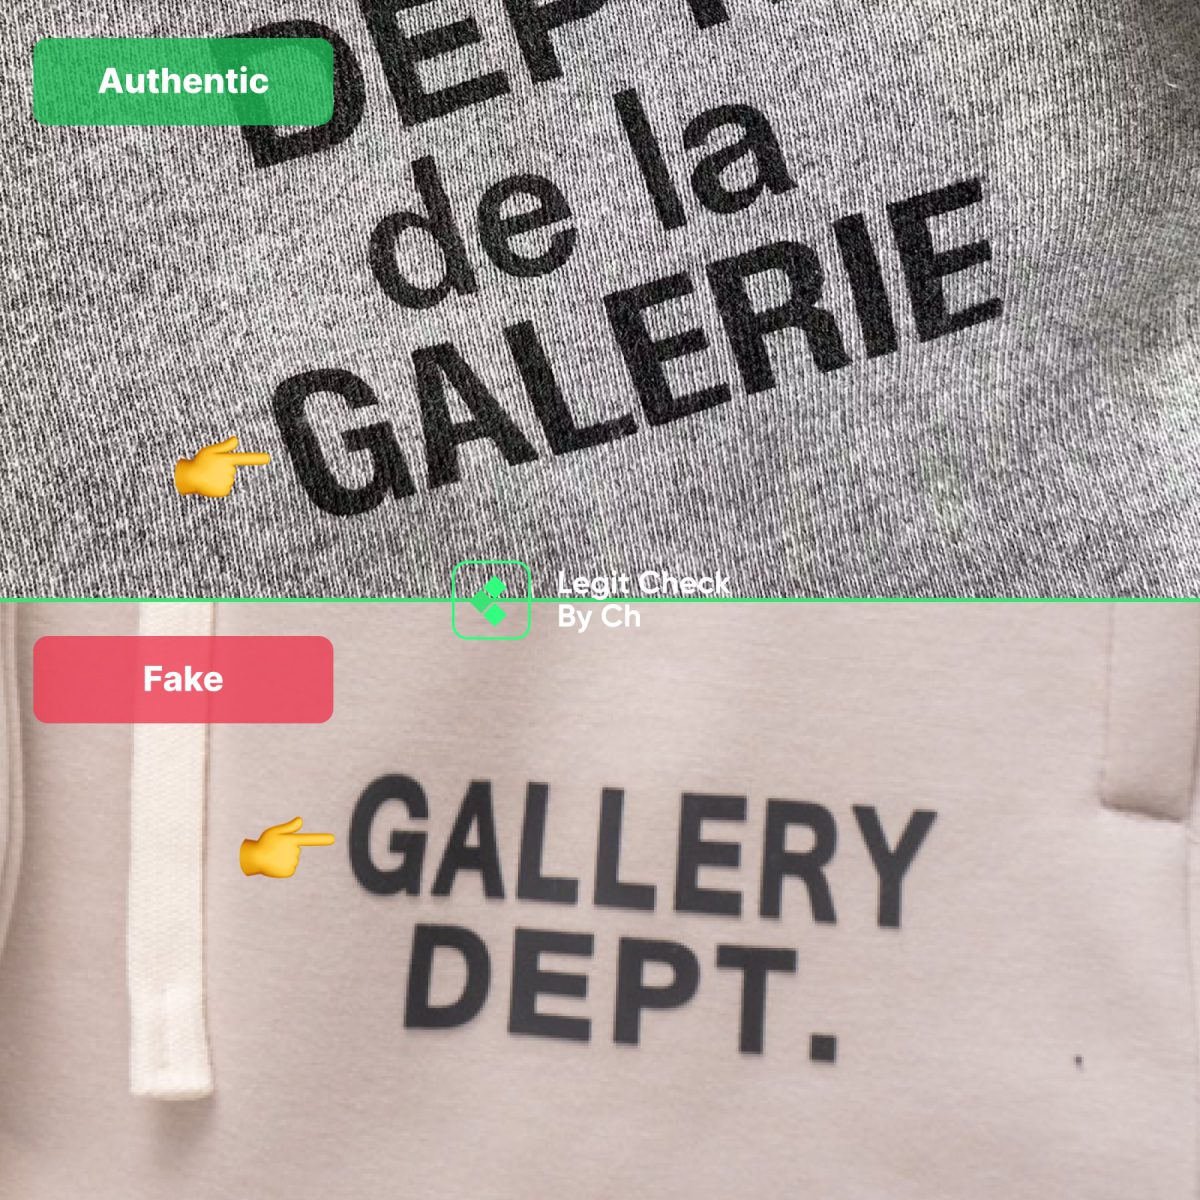 Gallery Dept Fake Vs Real Pants - Print